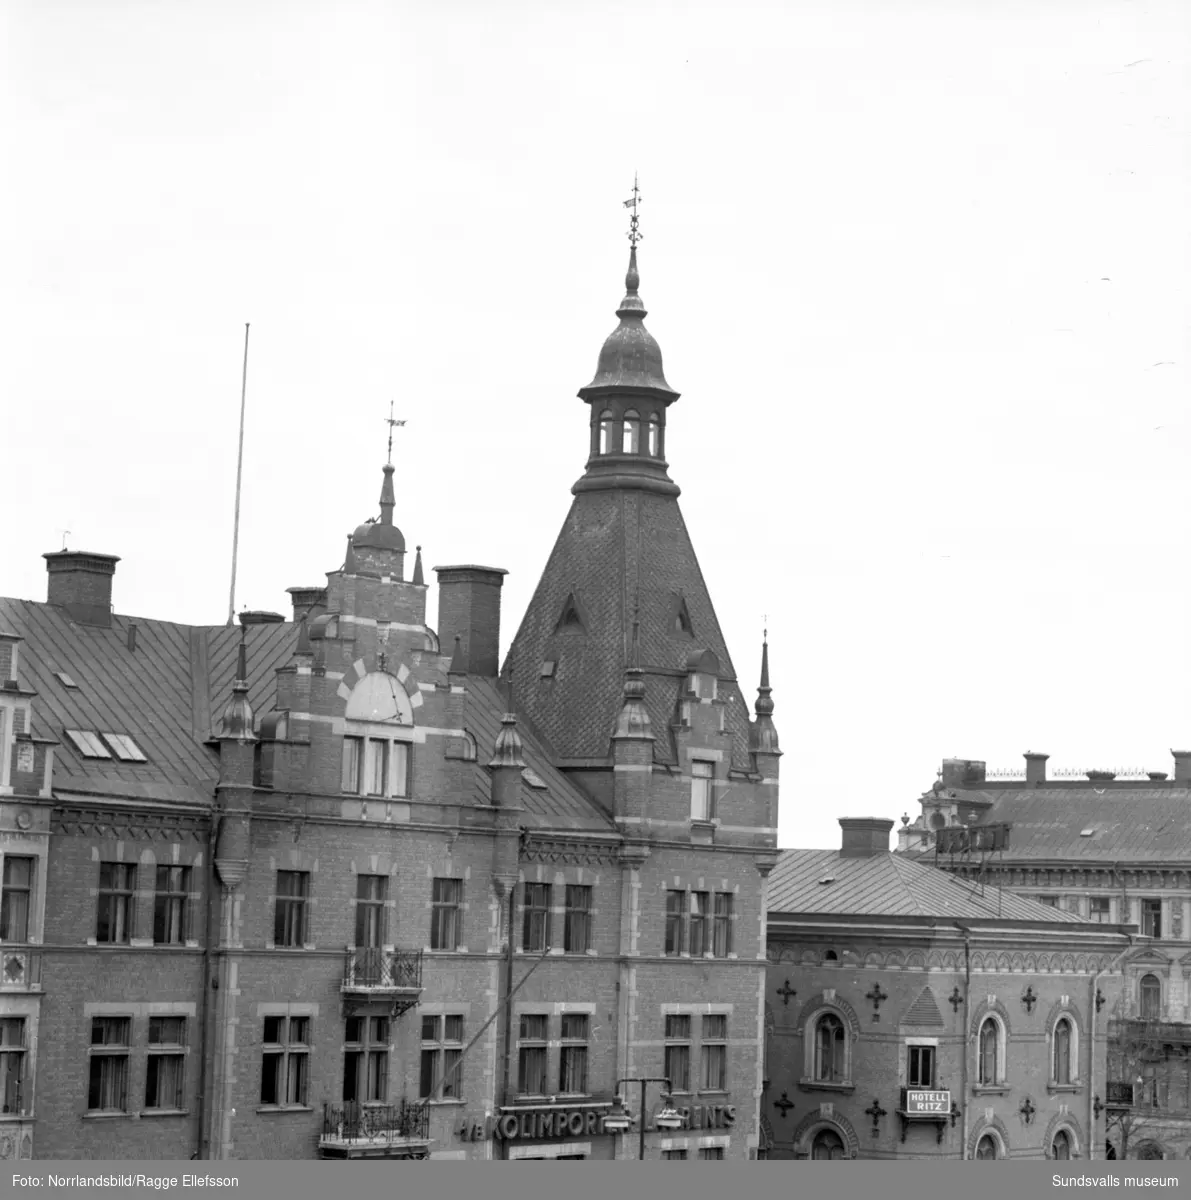 Stora torget och omkringliggande byggnader fotograferade från en balkong på Hirschska huset.